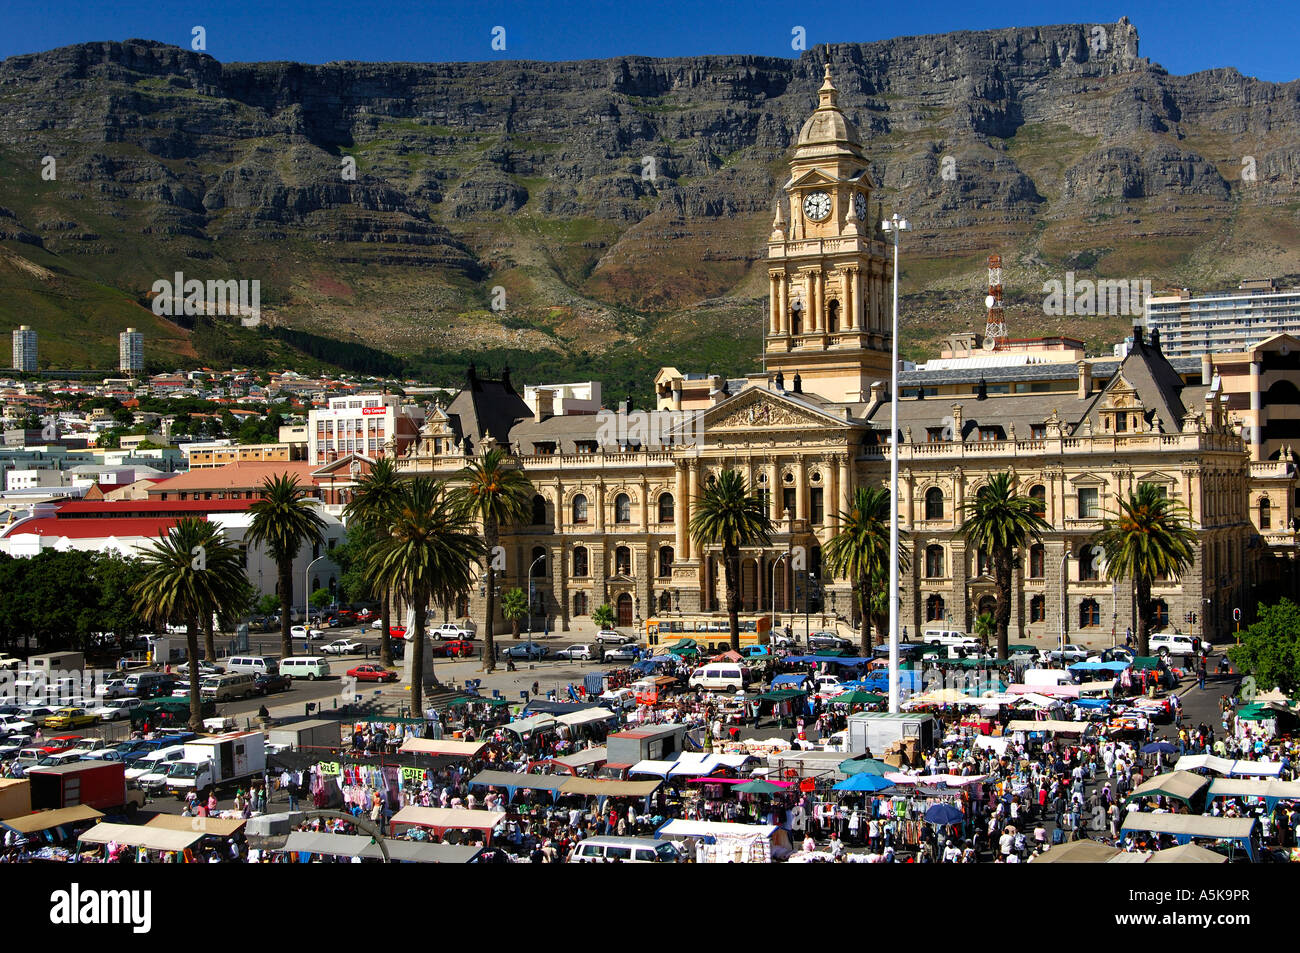 L'hôtel de ville, jour de marché sur la place Grand Parade, Table Mountain, Cape Town, Afrique du Sud Banque D'Images